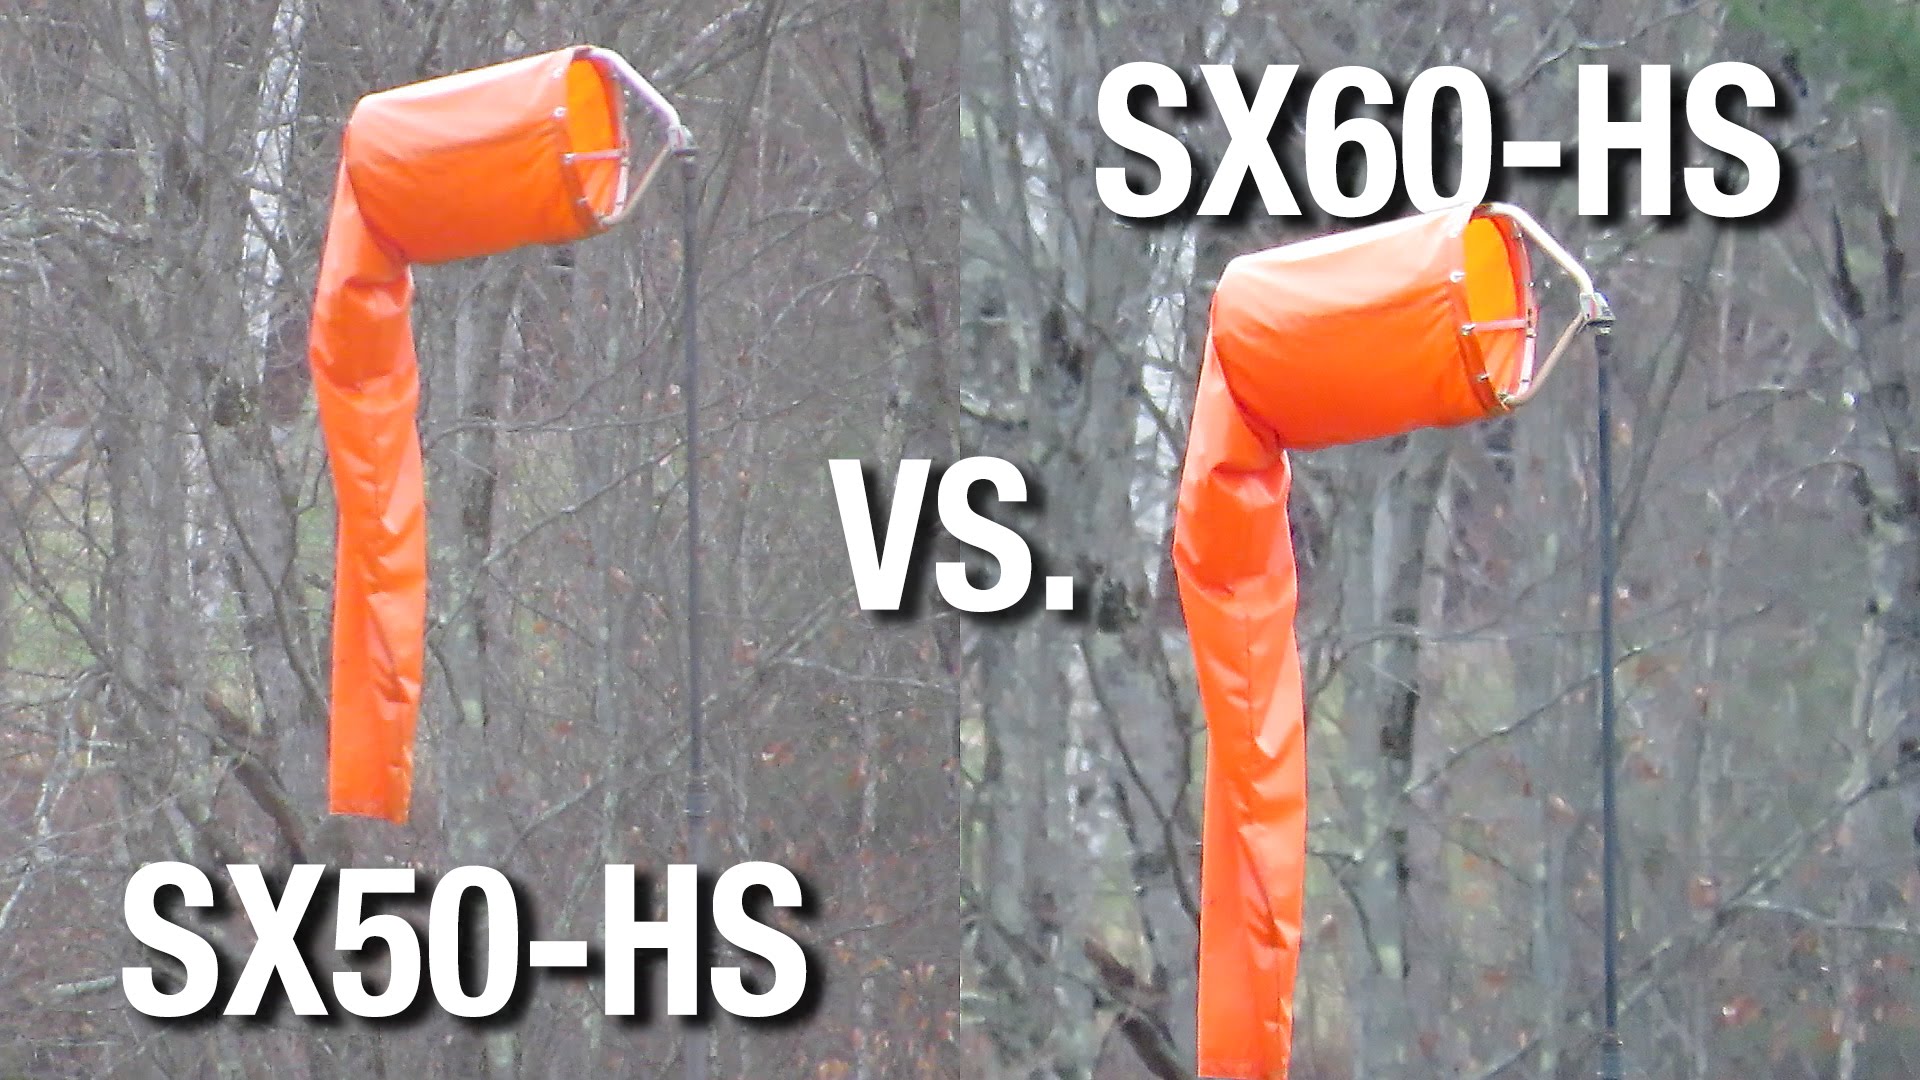 Canon Powershot SX50 HS vs. SX60 HS Video Quality Comparison